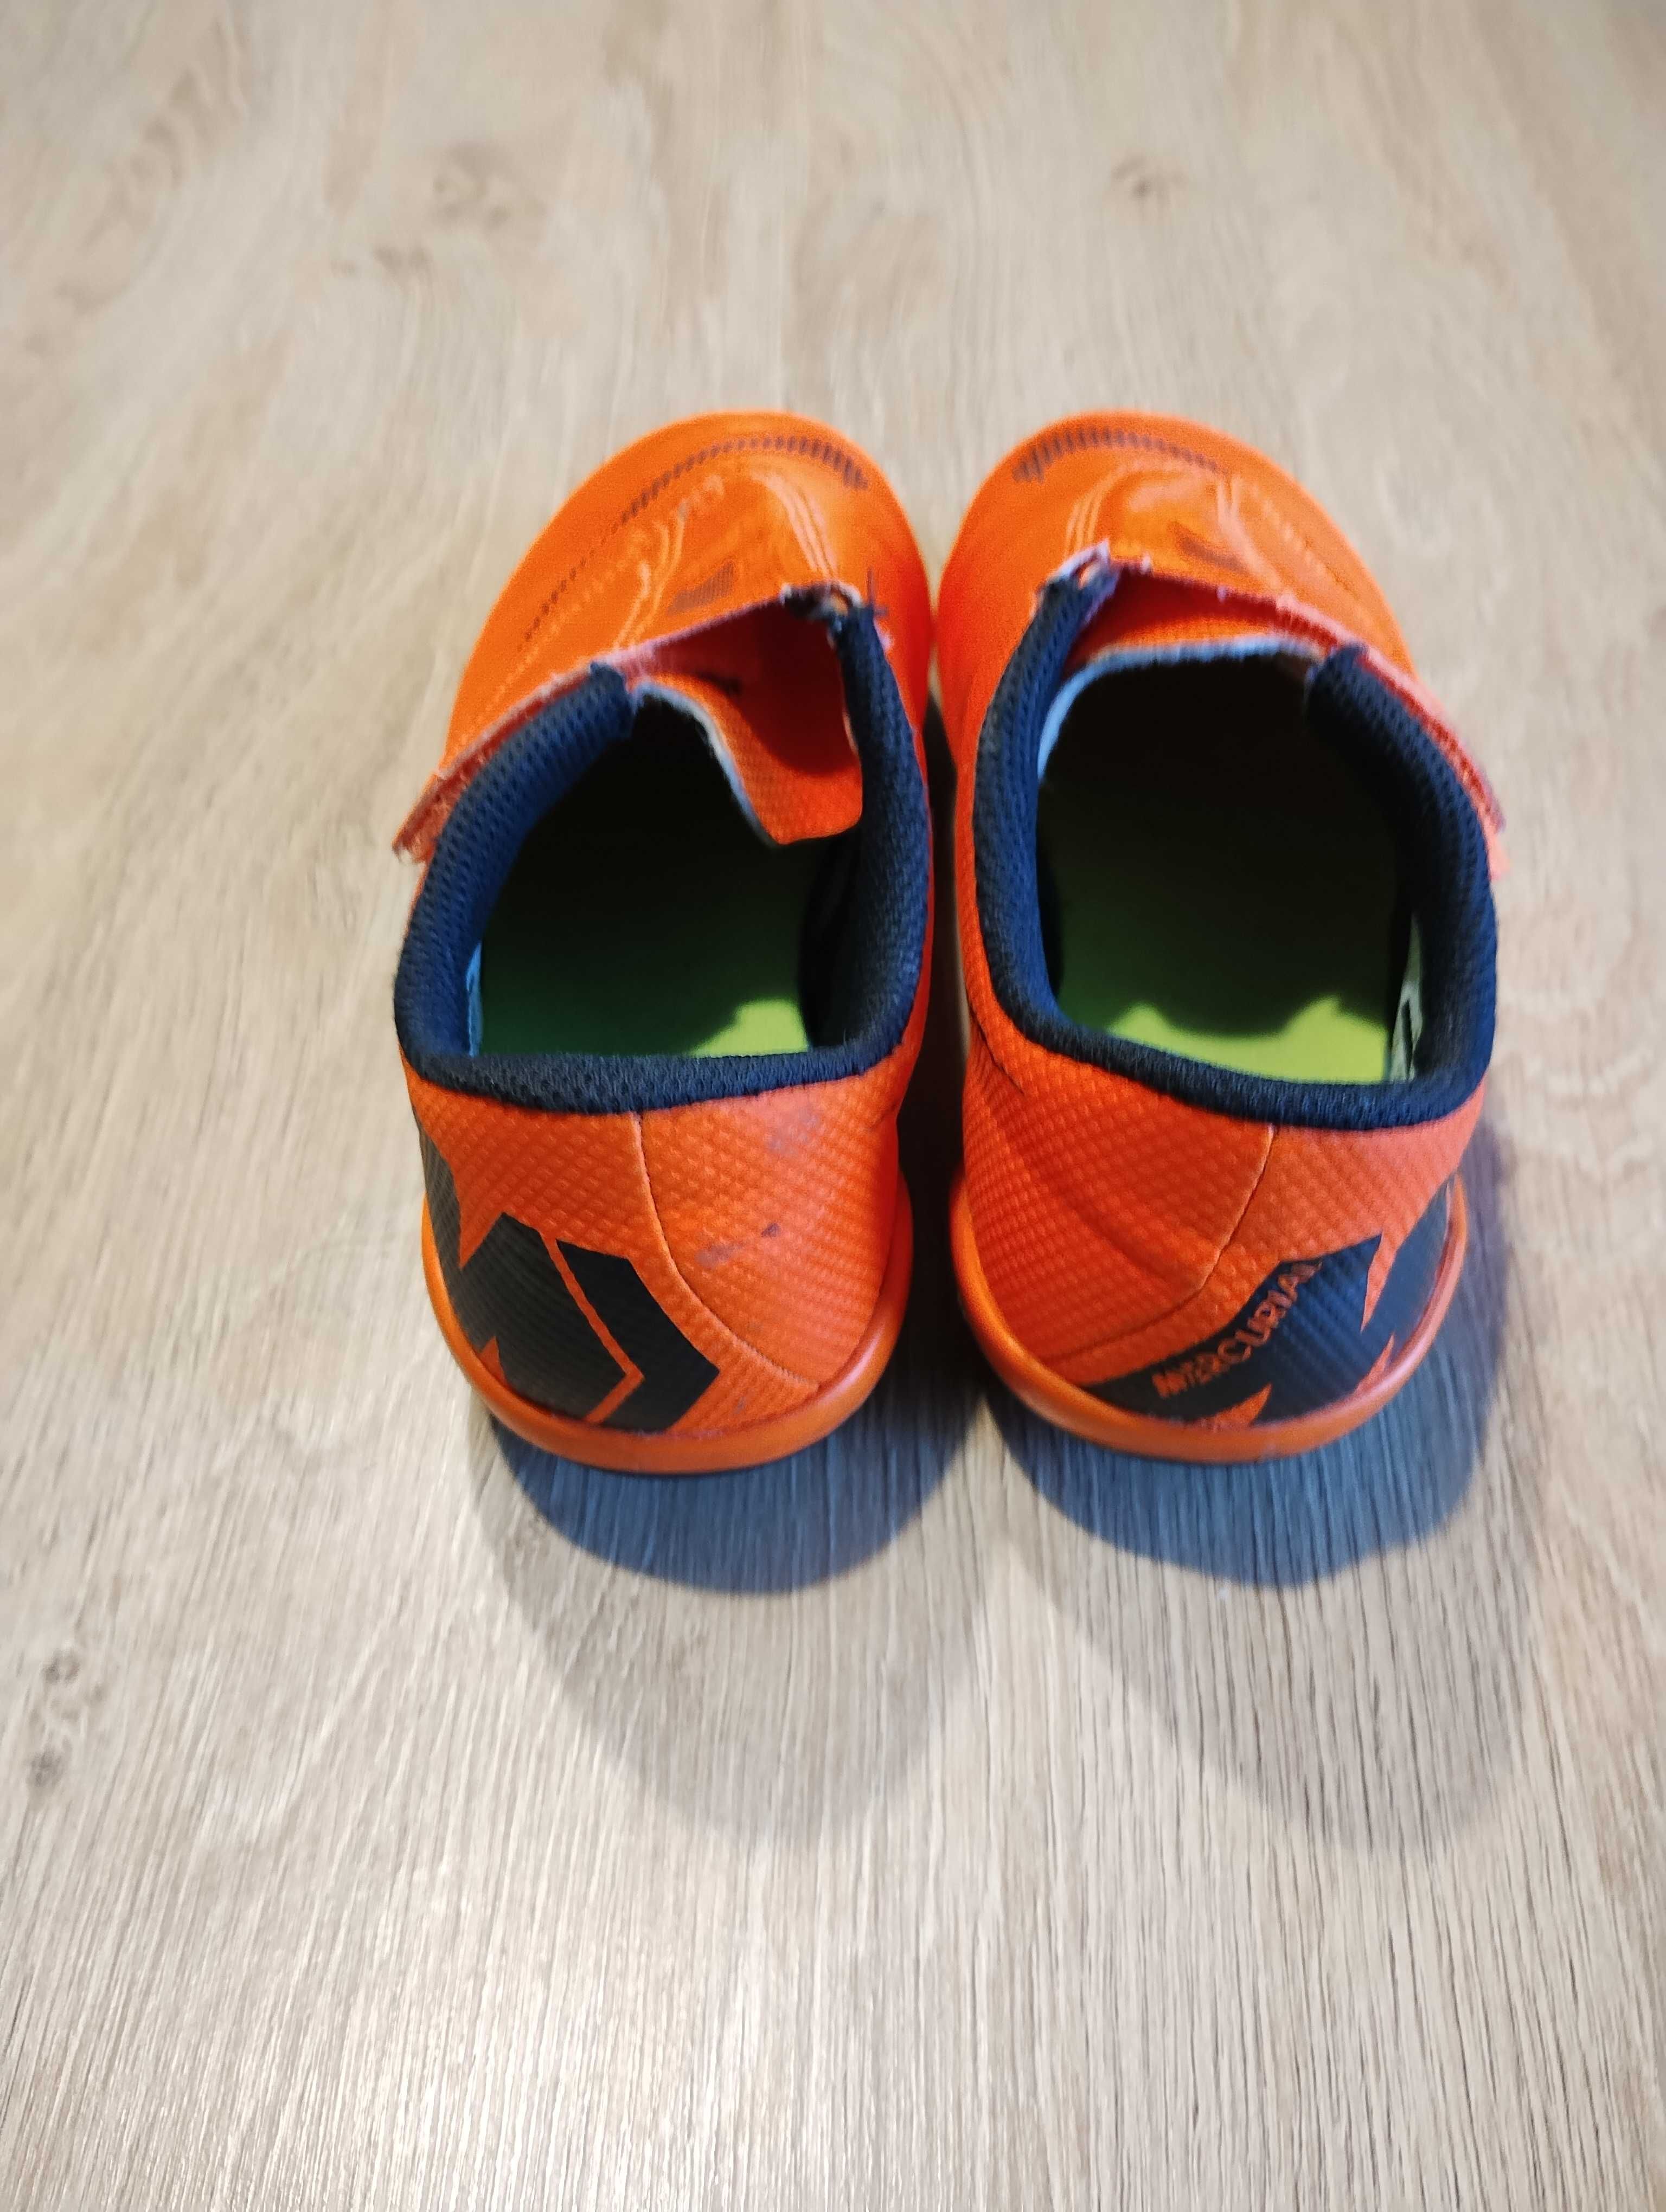 Nike Buty Piłkarskie Mercurial Vapor 12 r. 28,5